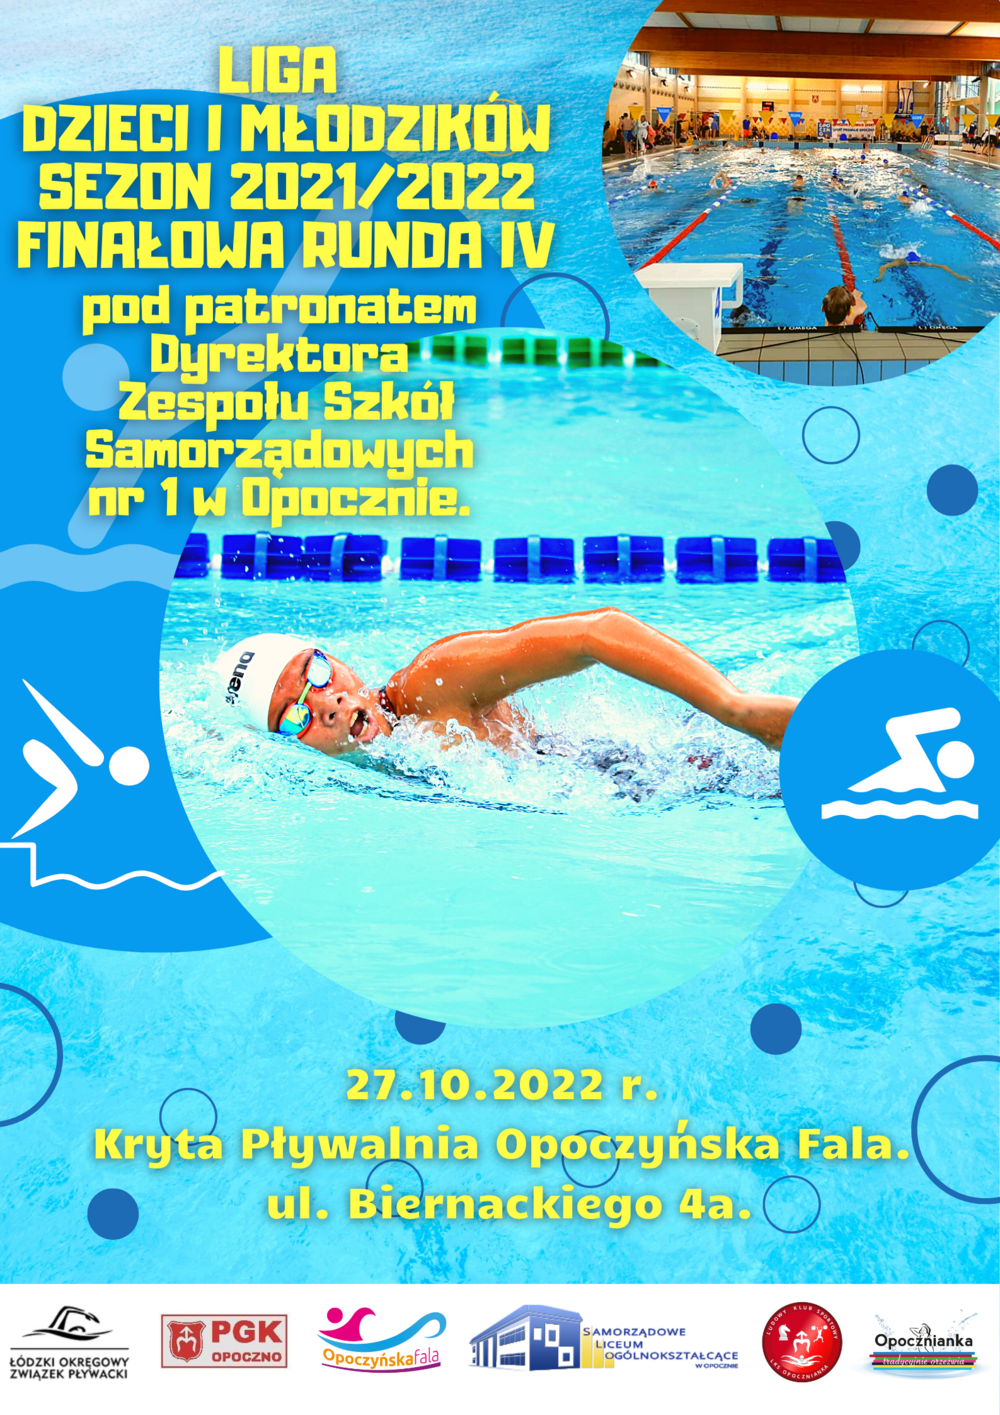 W czwartek 27 października 2022 r. na Krytej Pływalni Opoczyńska Fala odbędzie się Liga Dzieci i Młodzików Finałowa Runda IV nasi młodzi pływacy z sekcji pływackiej LKS Opocznianka powalczą o kolejne medale. Trzymamy kciuki.